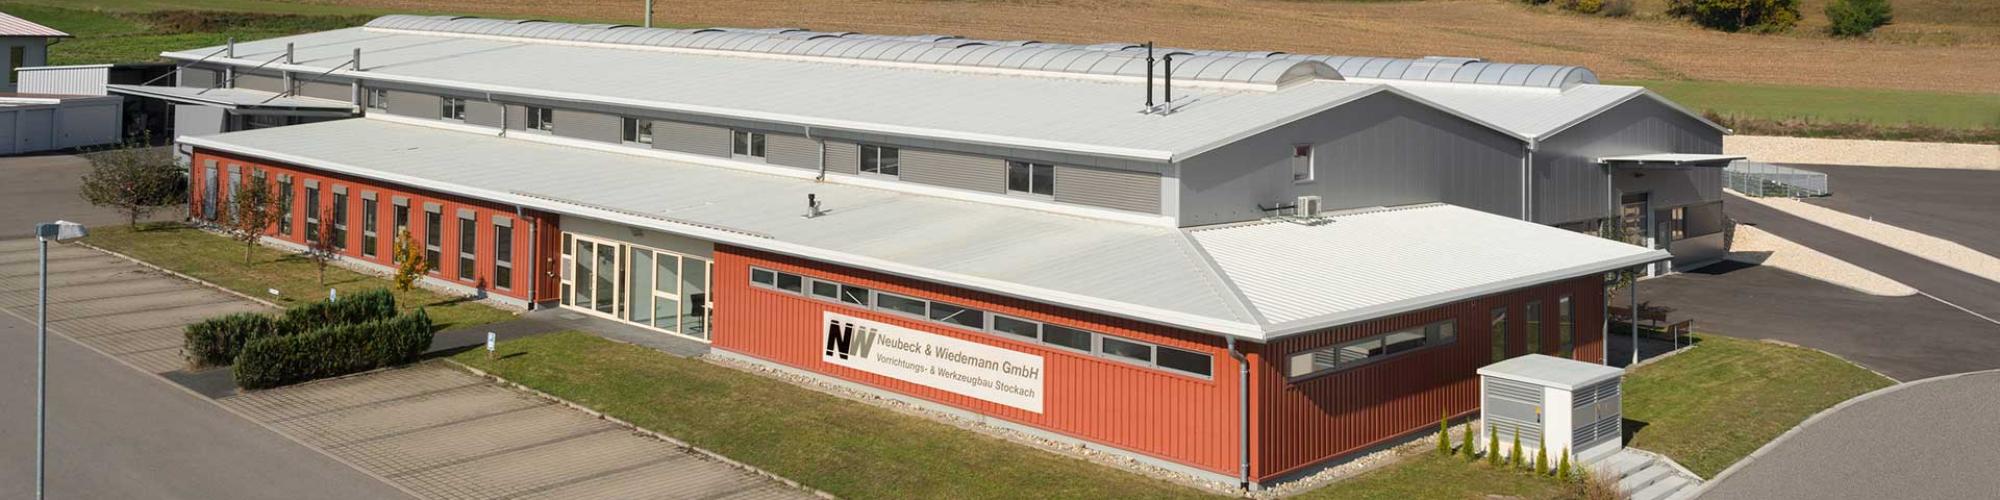 Neubeck & Wiedemann GmbH